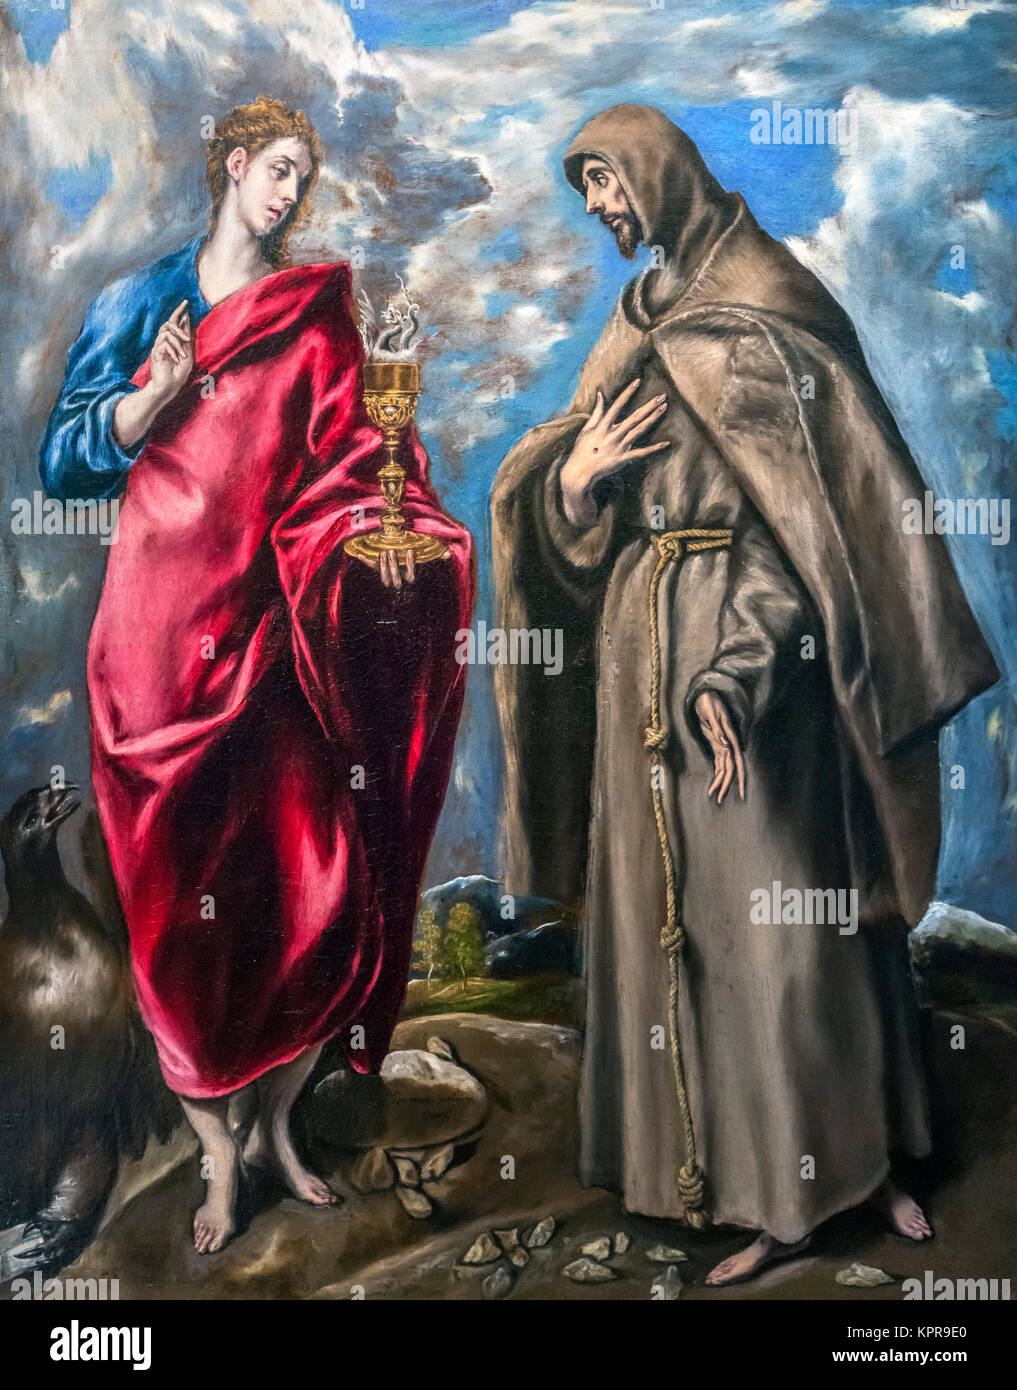 El evangelista san Juan y de San Francisco de El Greco (Doménikos Theotokópoulos, 1541-1614), óleo sobre lienzo, c.1600. Foto de stock